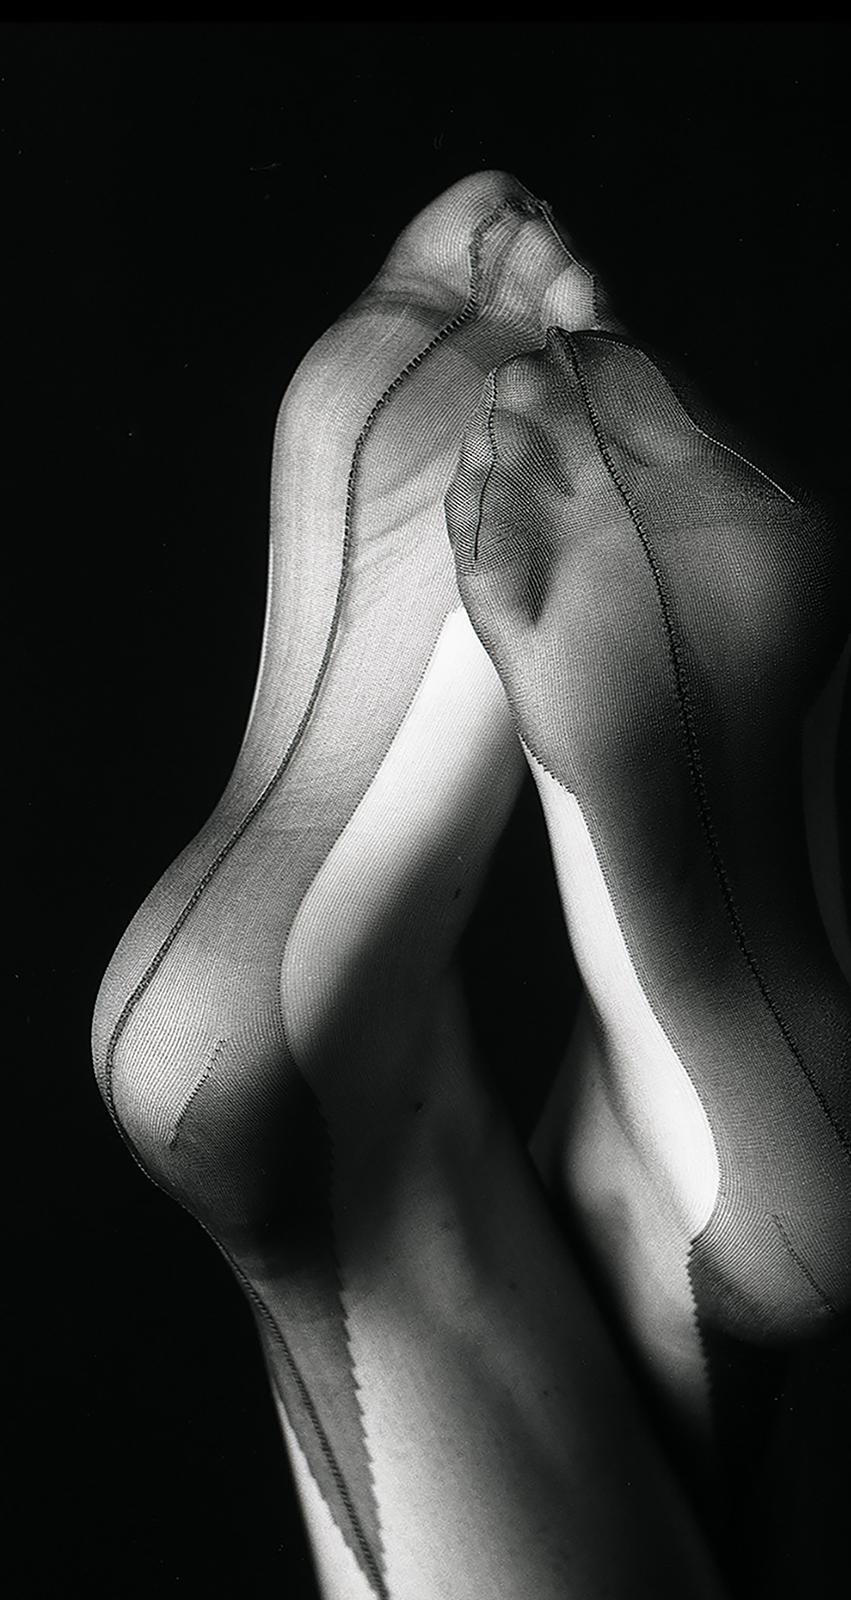 Put Your Feet Up - Impression de natures mortes en édition limitée signée, mannequin sexy  - Photograph de Geoff Halpin